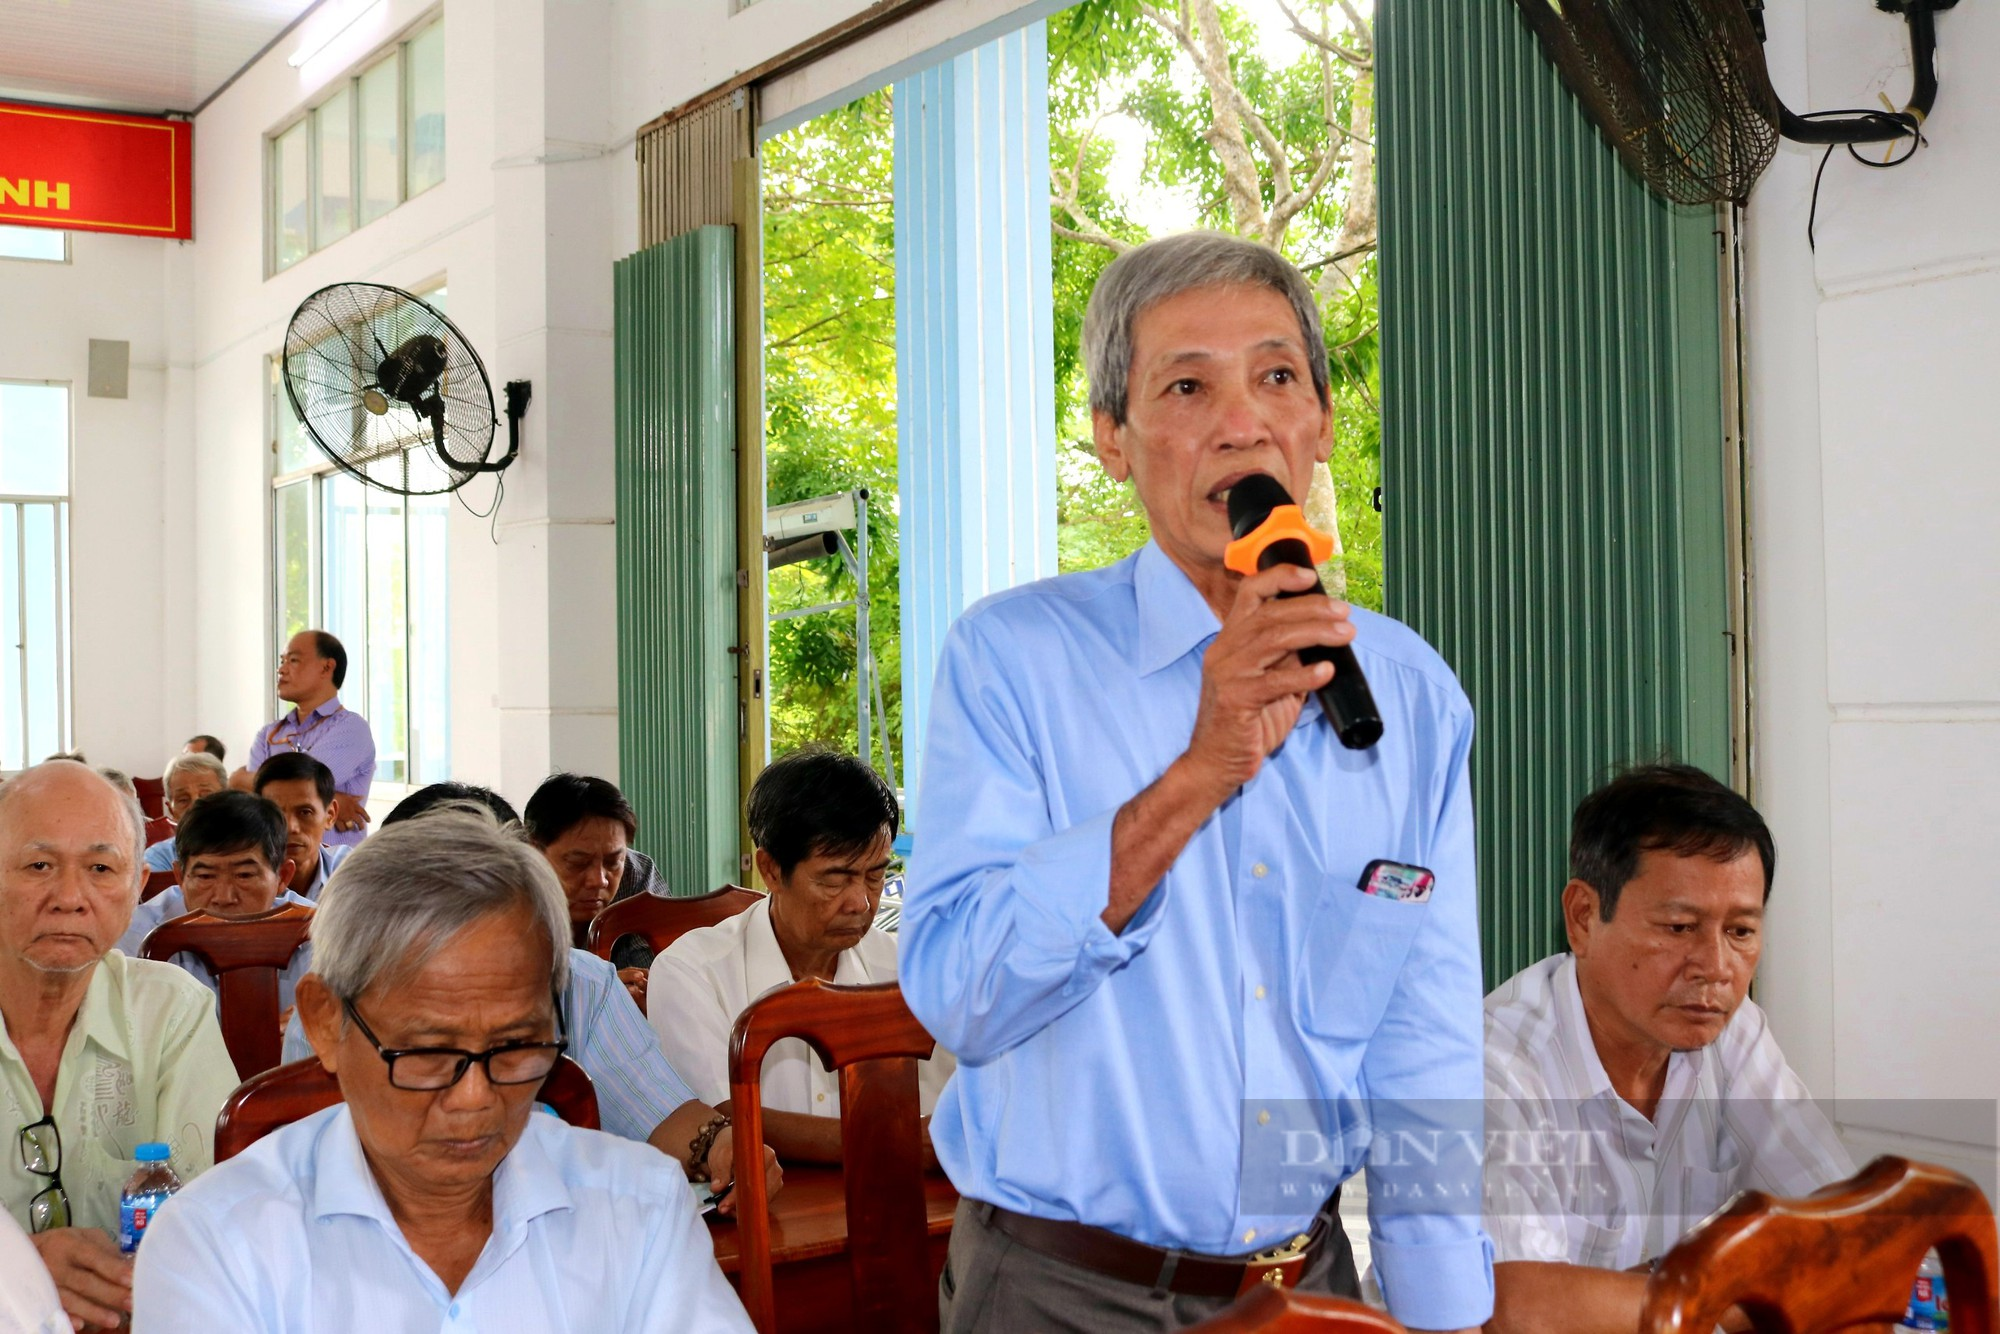 Chủ tịch Hội NDVN và đoàn ĐBQH tỉnh An Giang tiếp xúc cử tri sau Kỳ họp thứ năm tại huyện Chợ Mới - Ảnh 3.